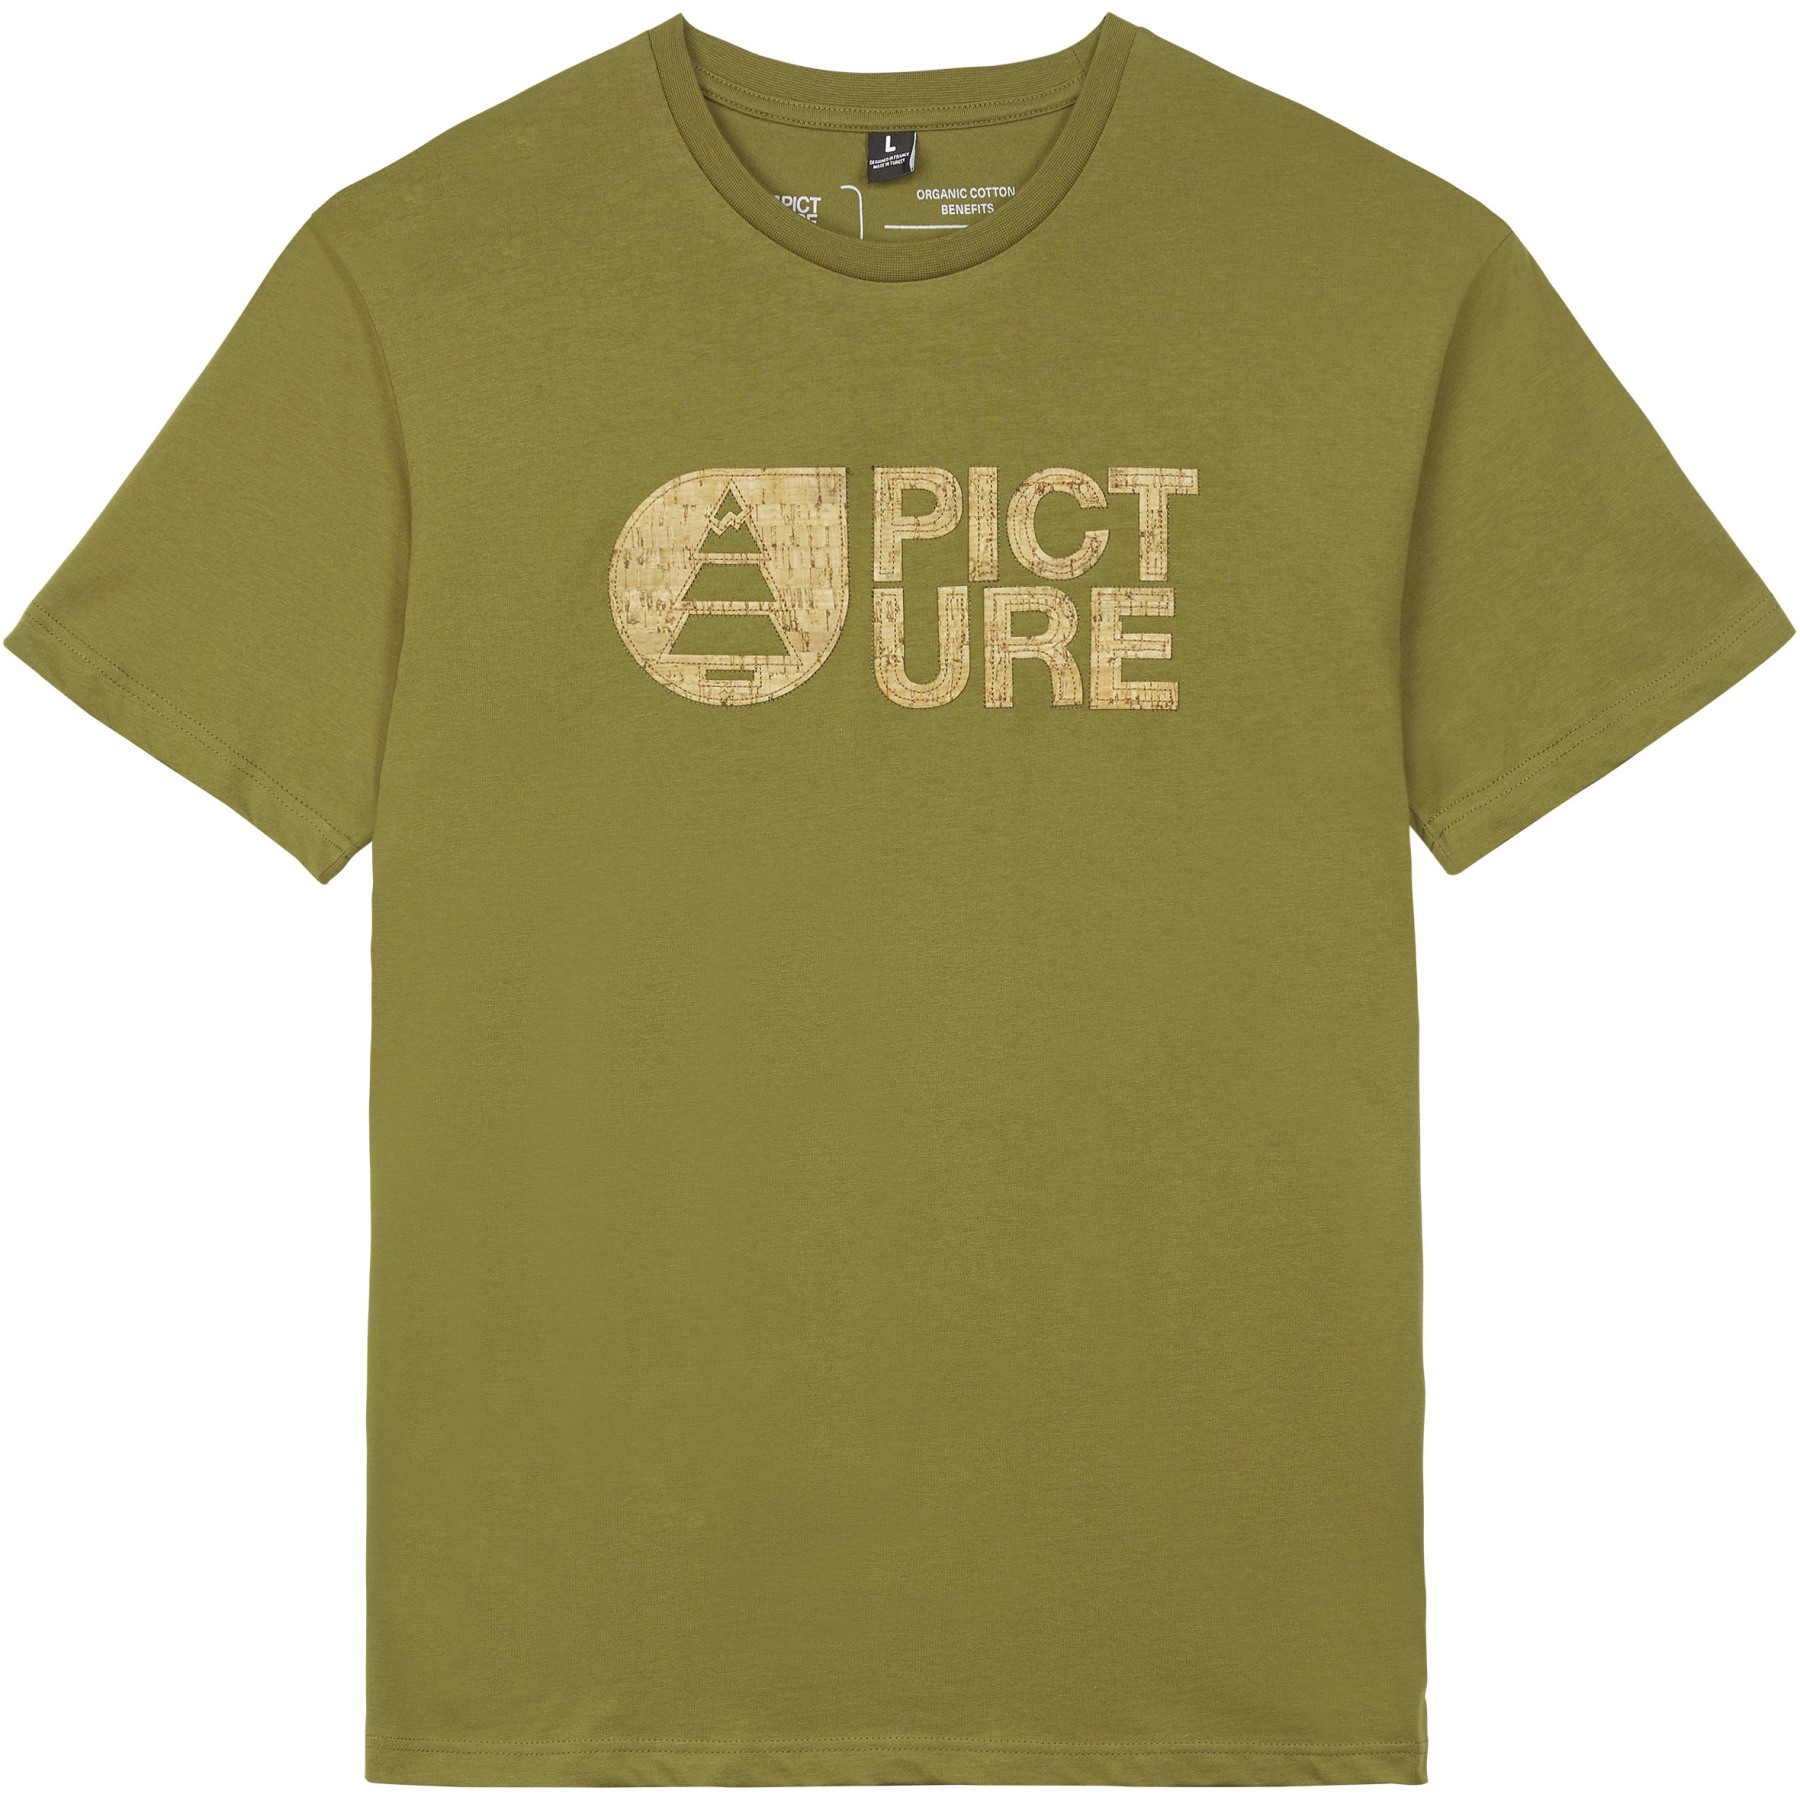 Bild von Picture Basement Cork T-Shirt - Army Green